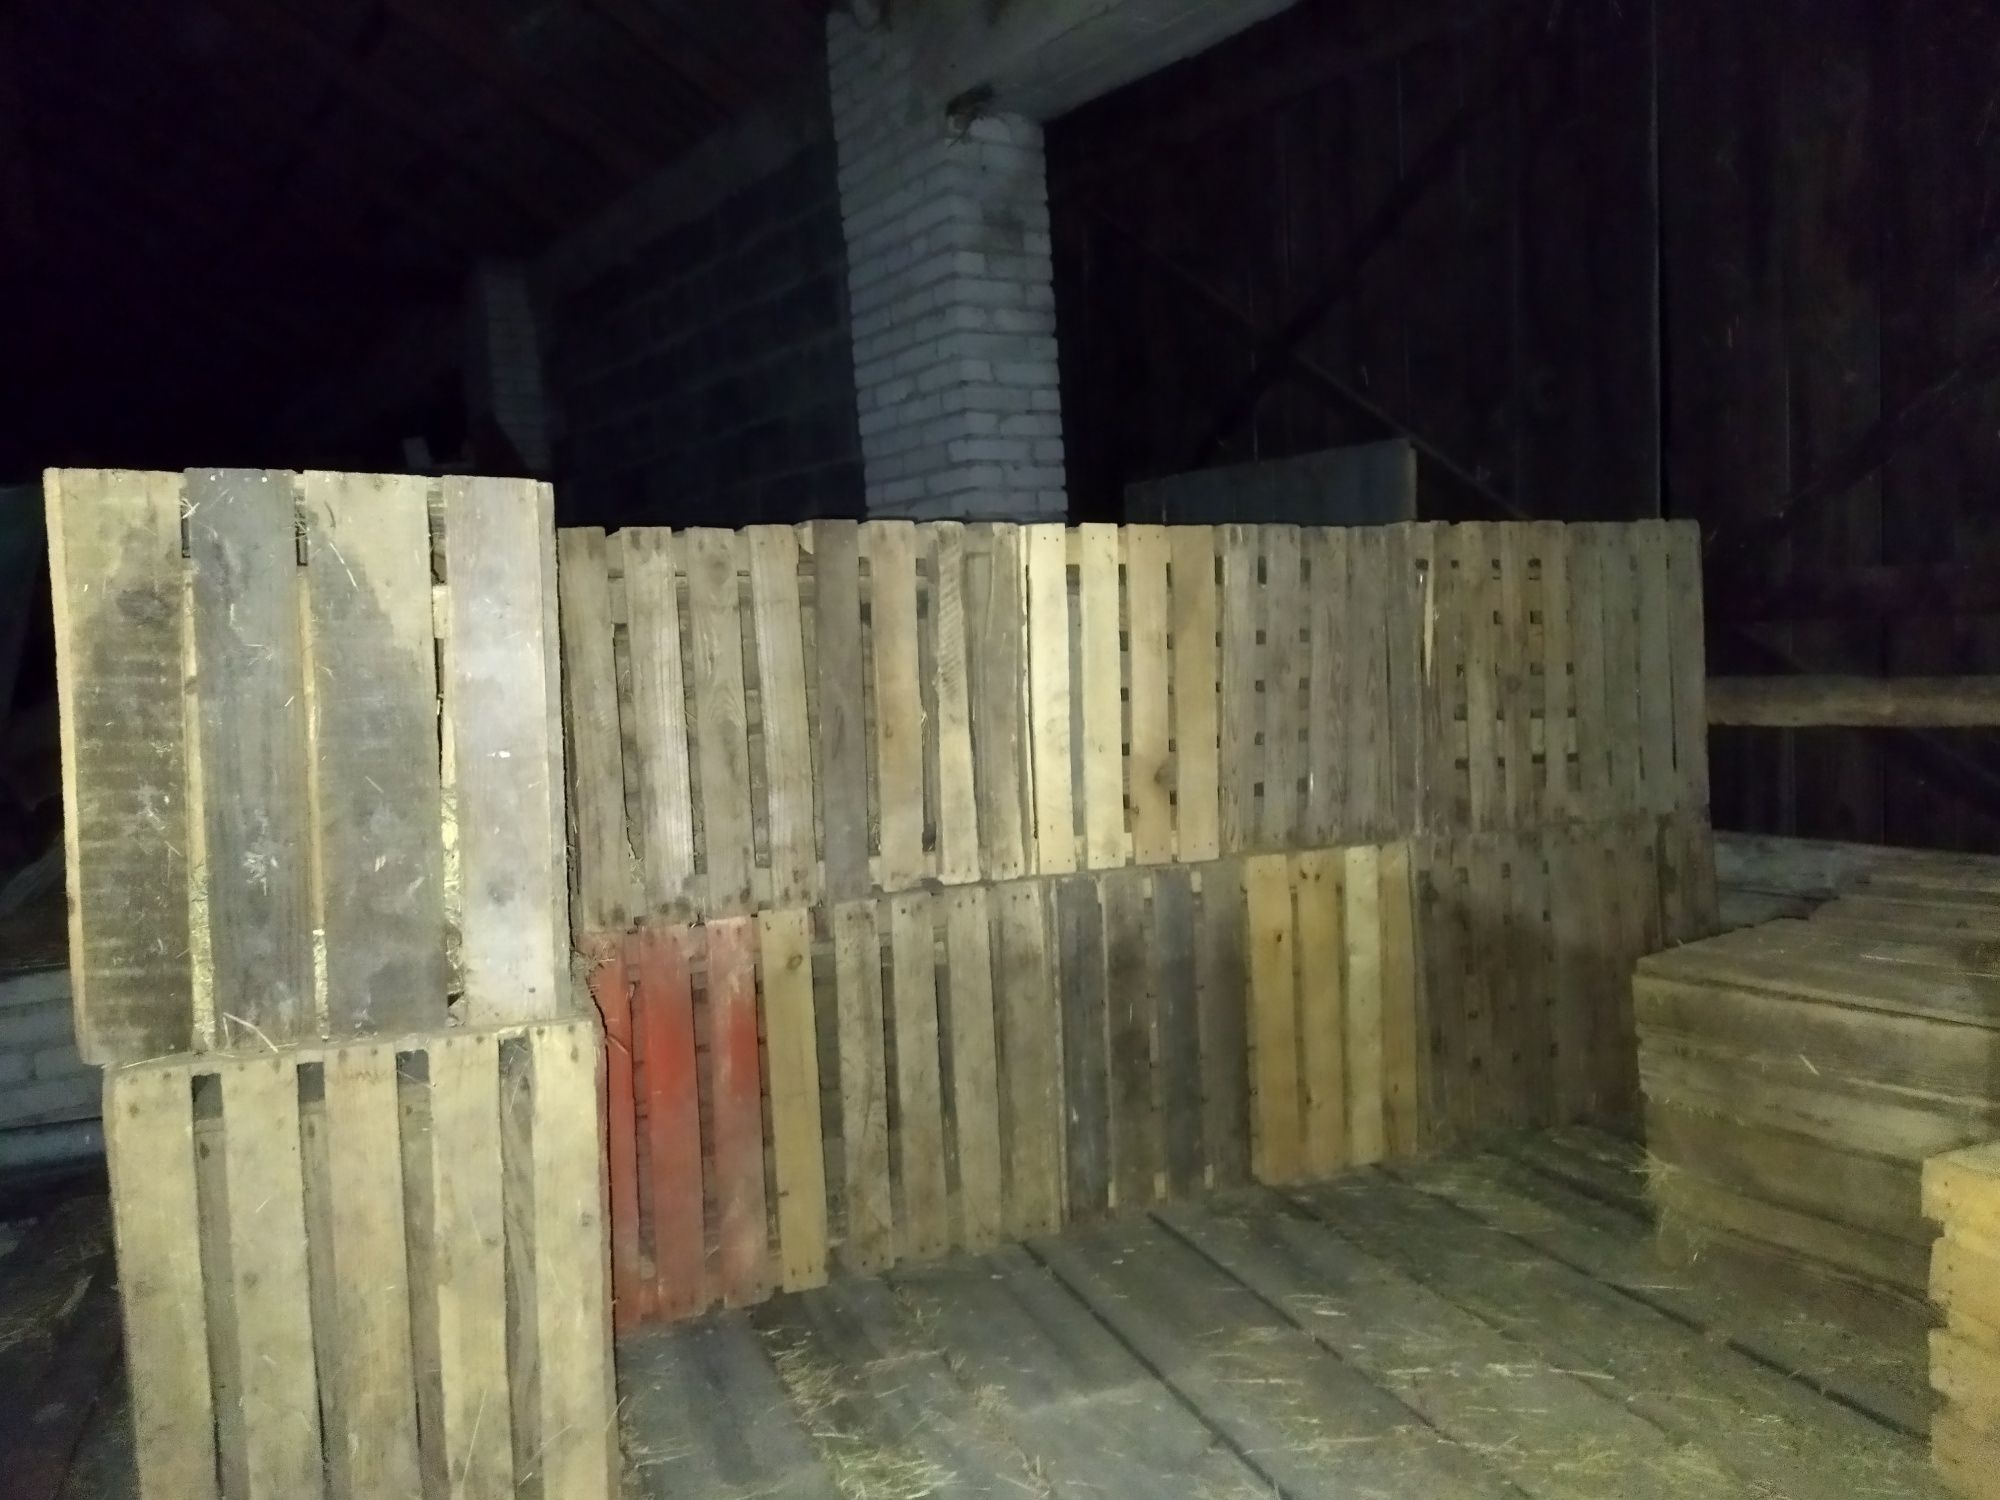 Skrzynki, jedynki sosnowe/ klatki drewniane 40x50x30